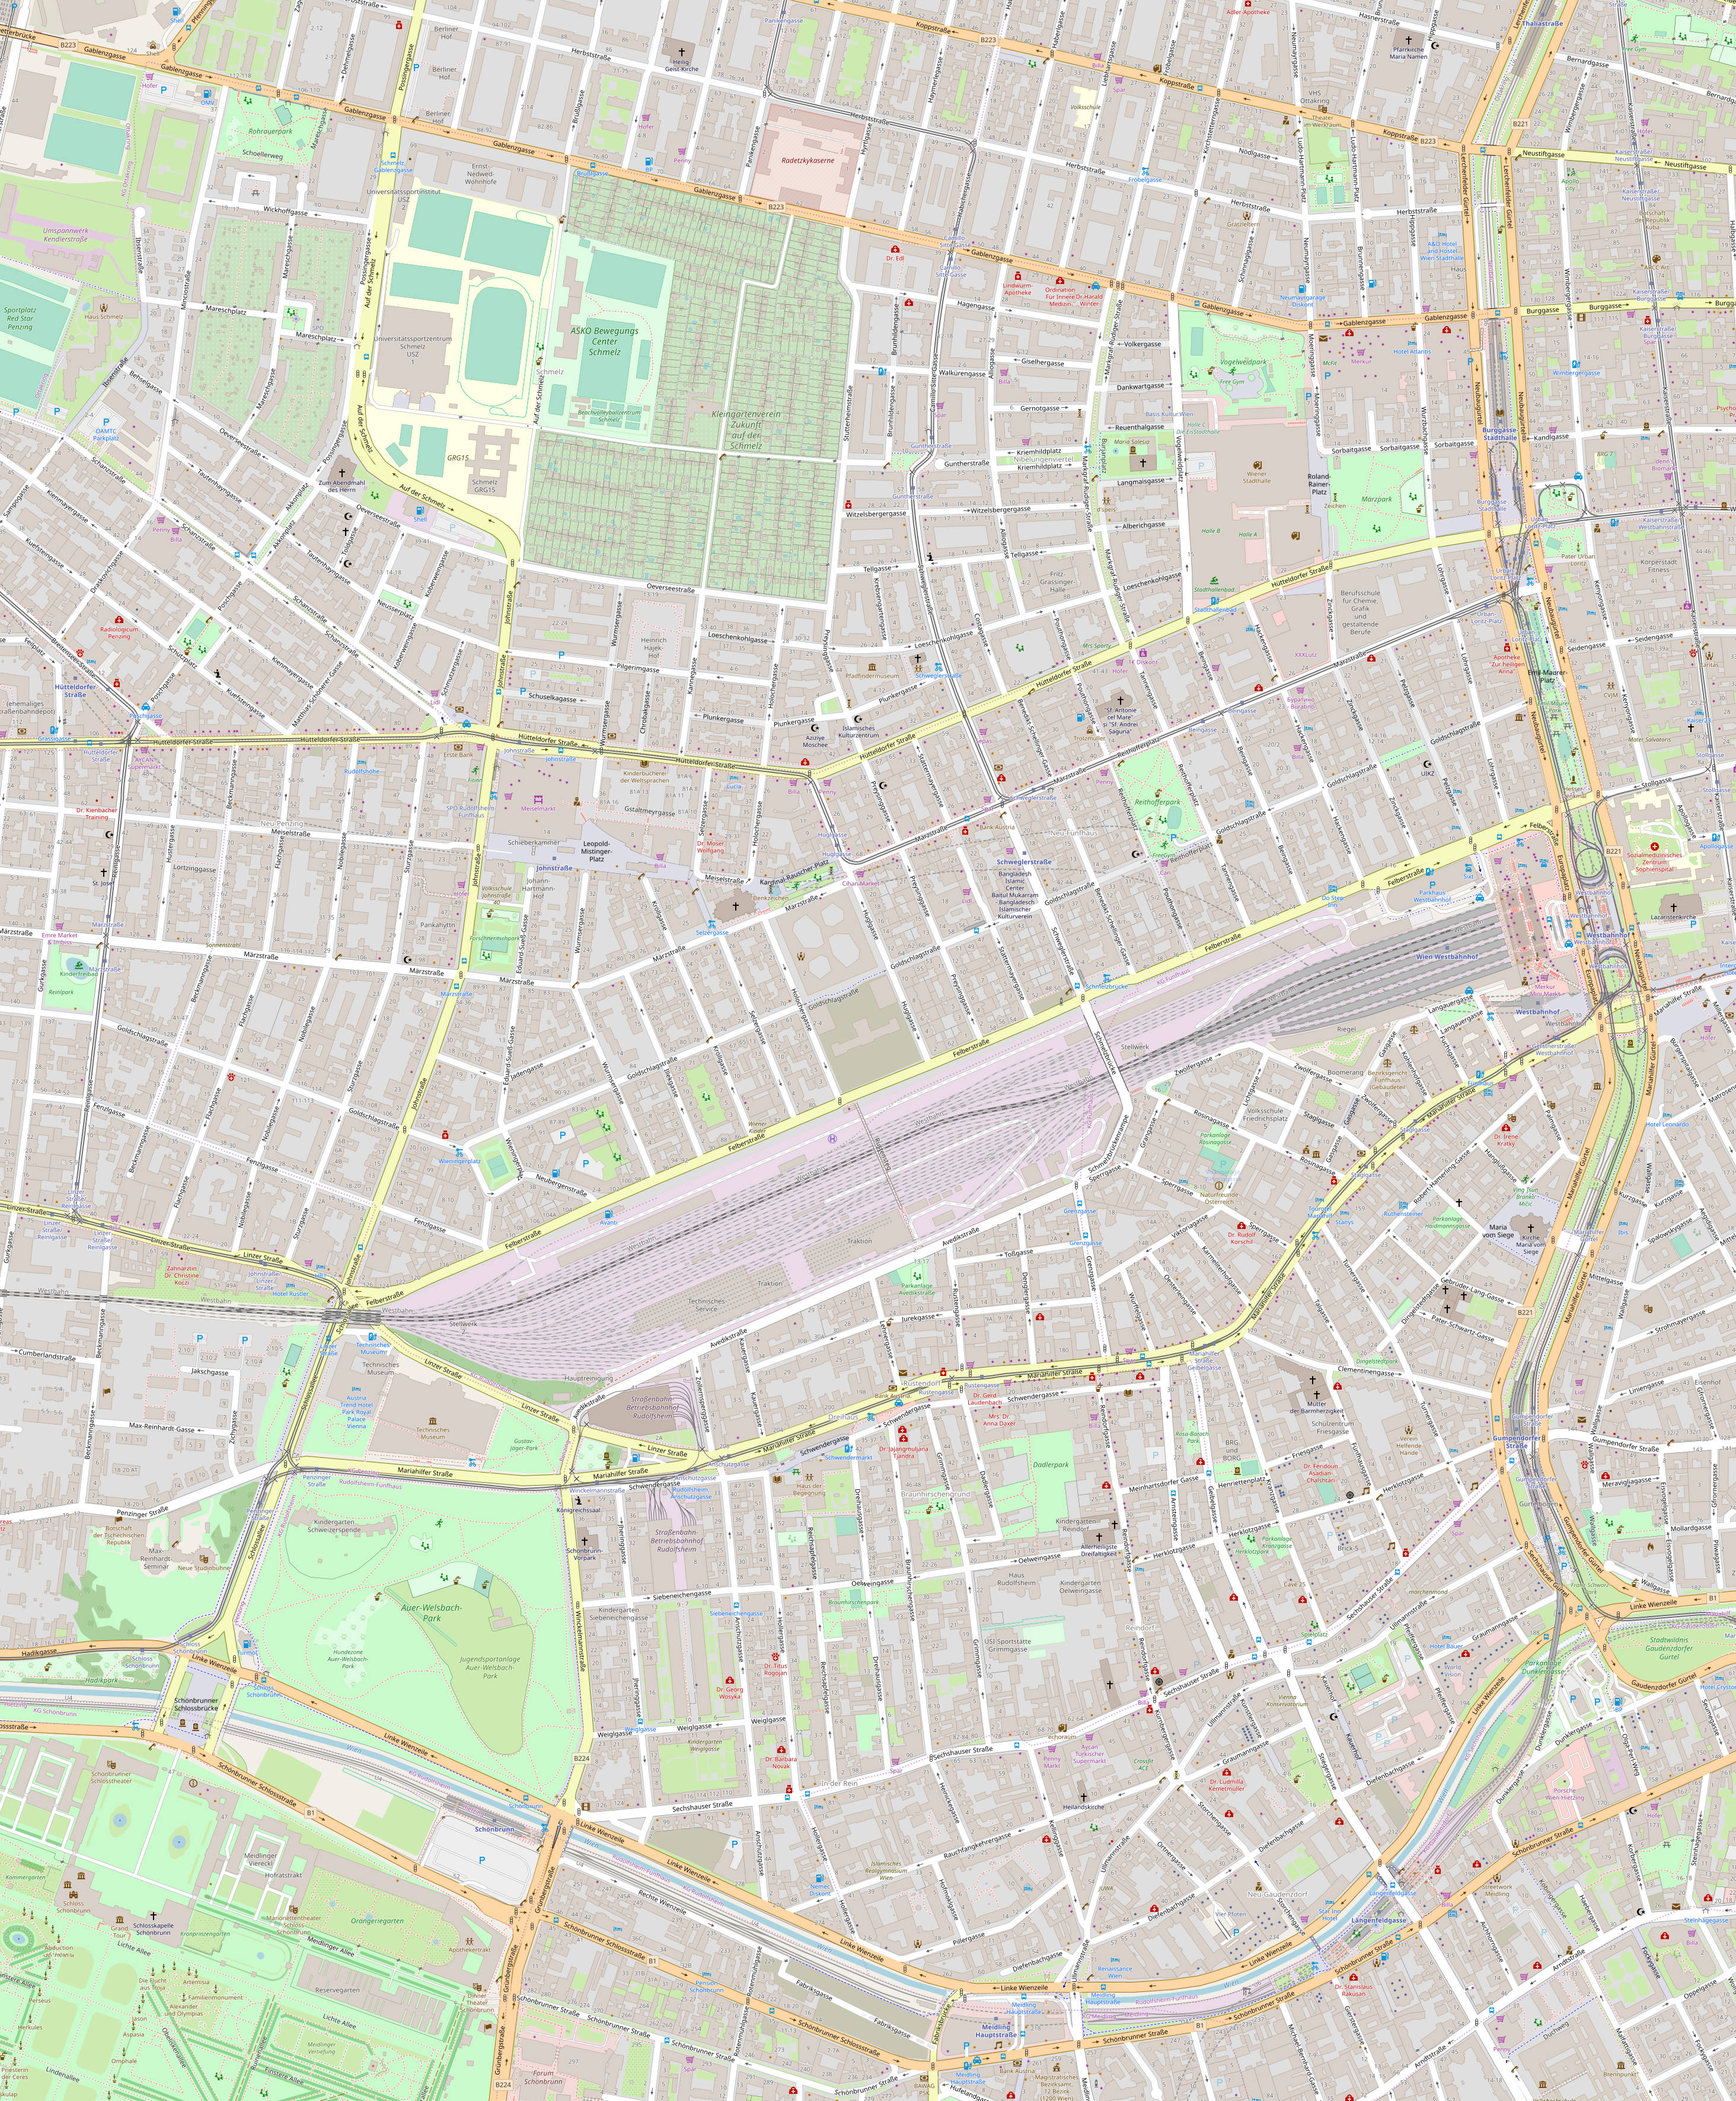 Bezirksplan Wien 15, Rudolfsheim-Fünfhaus, Kartenausschnitt von OpenStreetMap als komprimiertes jpg Bild